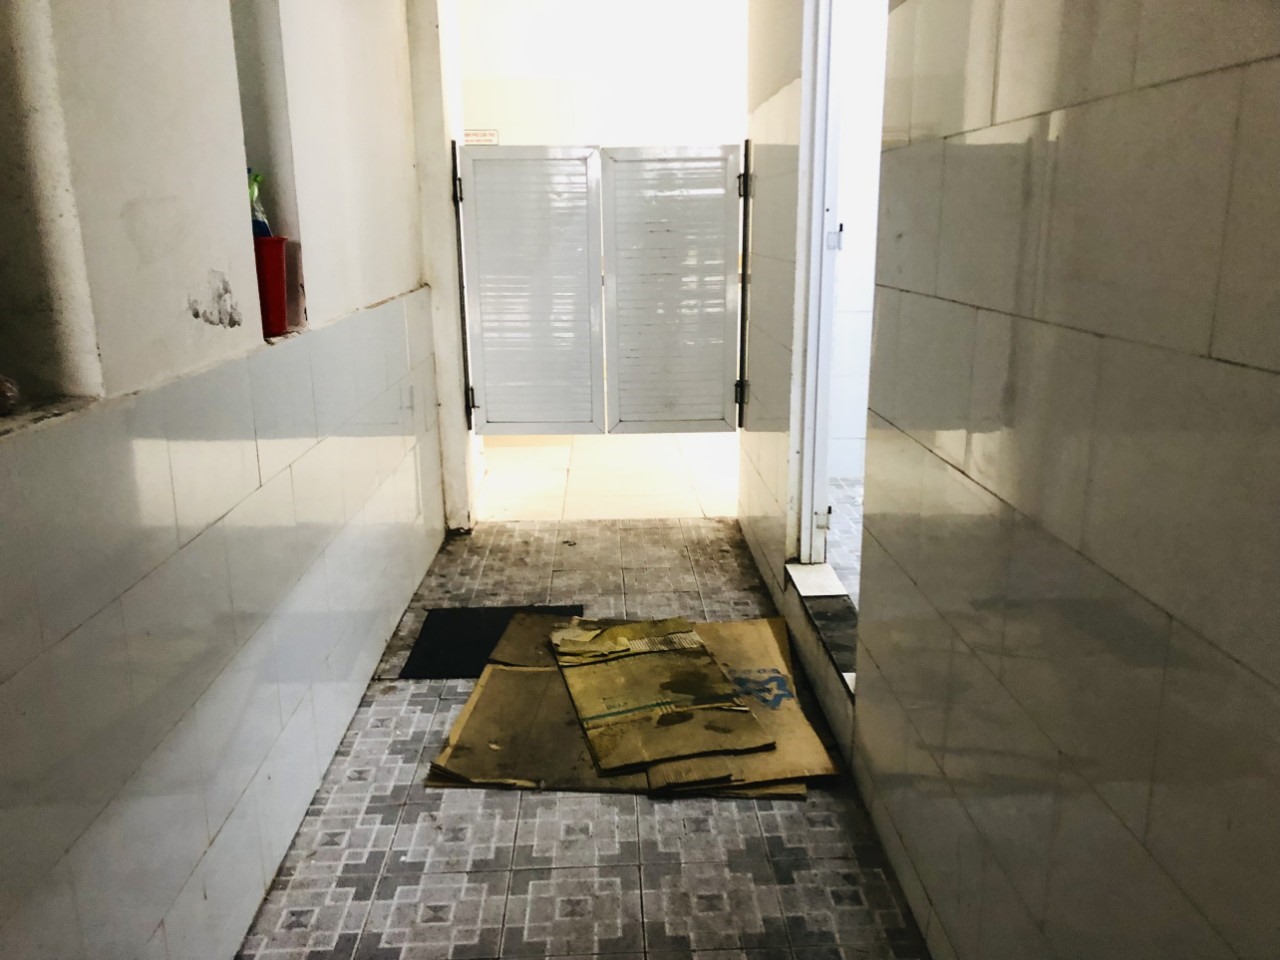 Tại Bệnh viện Nhi đồng Cần Thơ, một số nhà vệ sinh không có nước để xả và xà bông. Đáng chú ý còn không có người lau dọn.